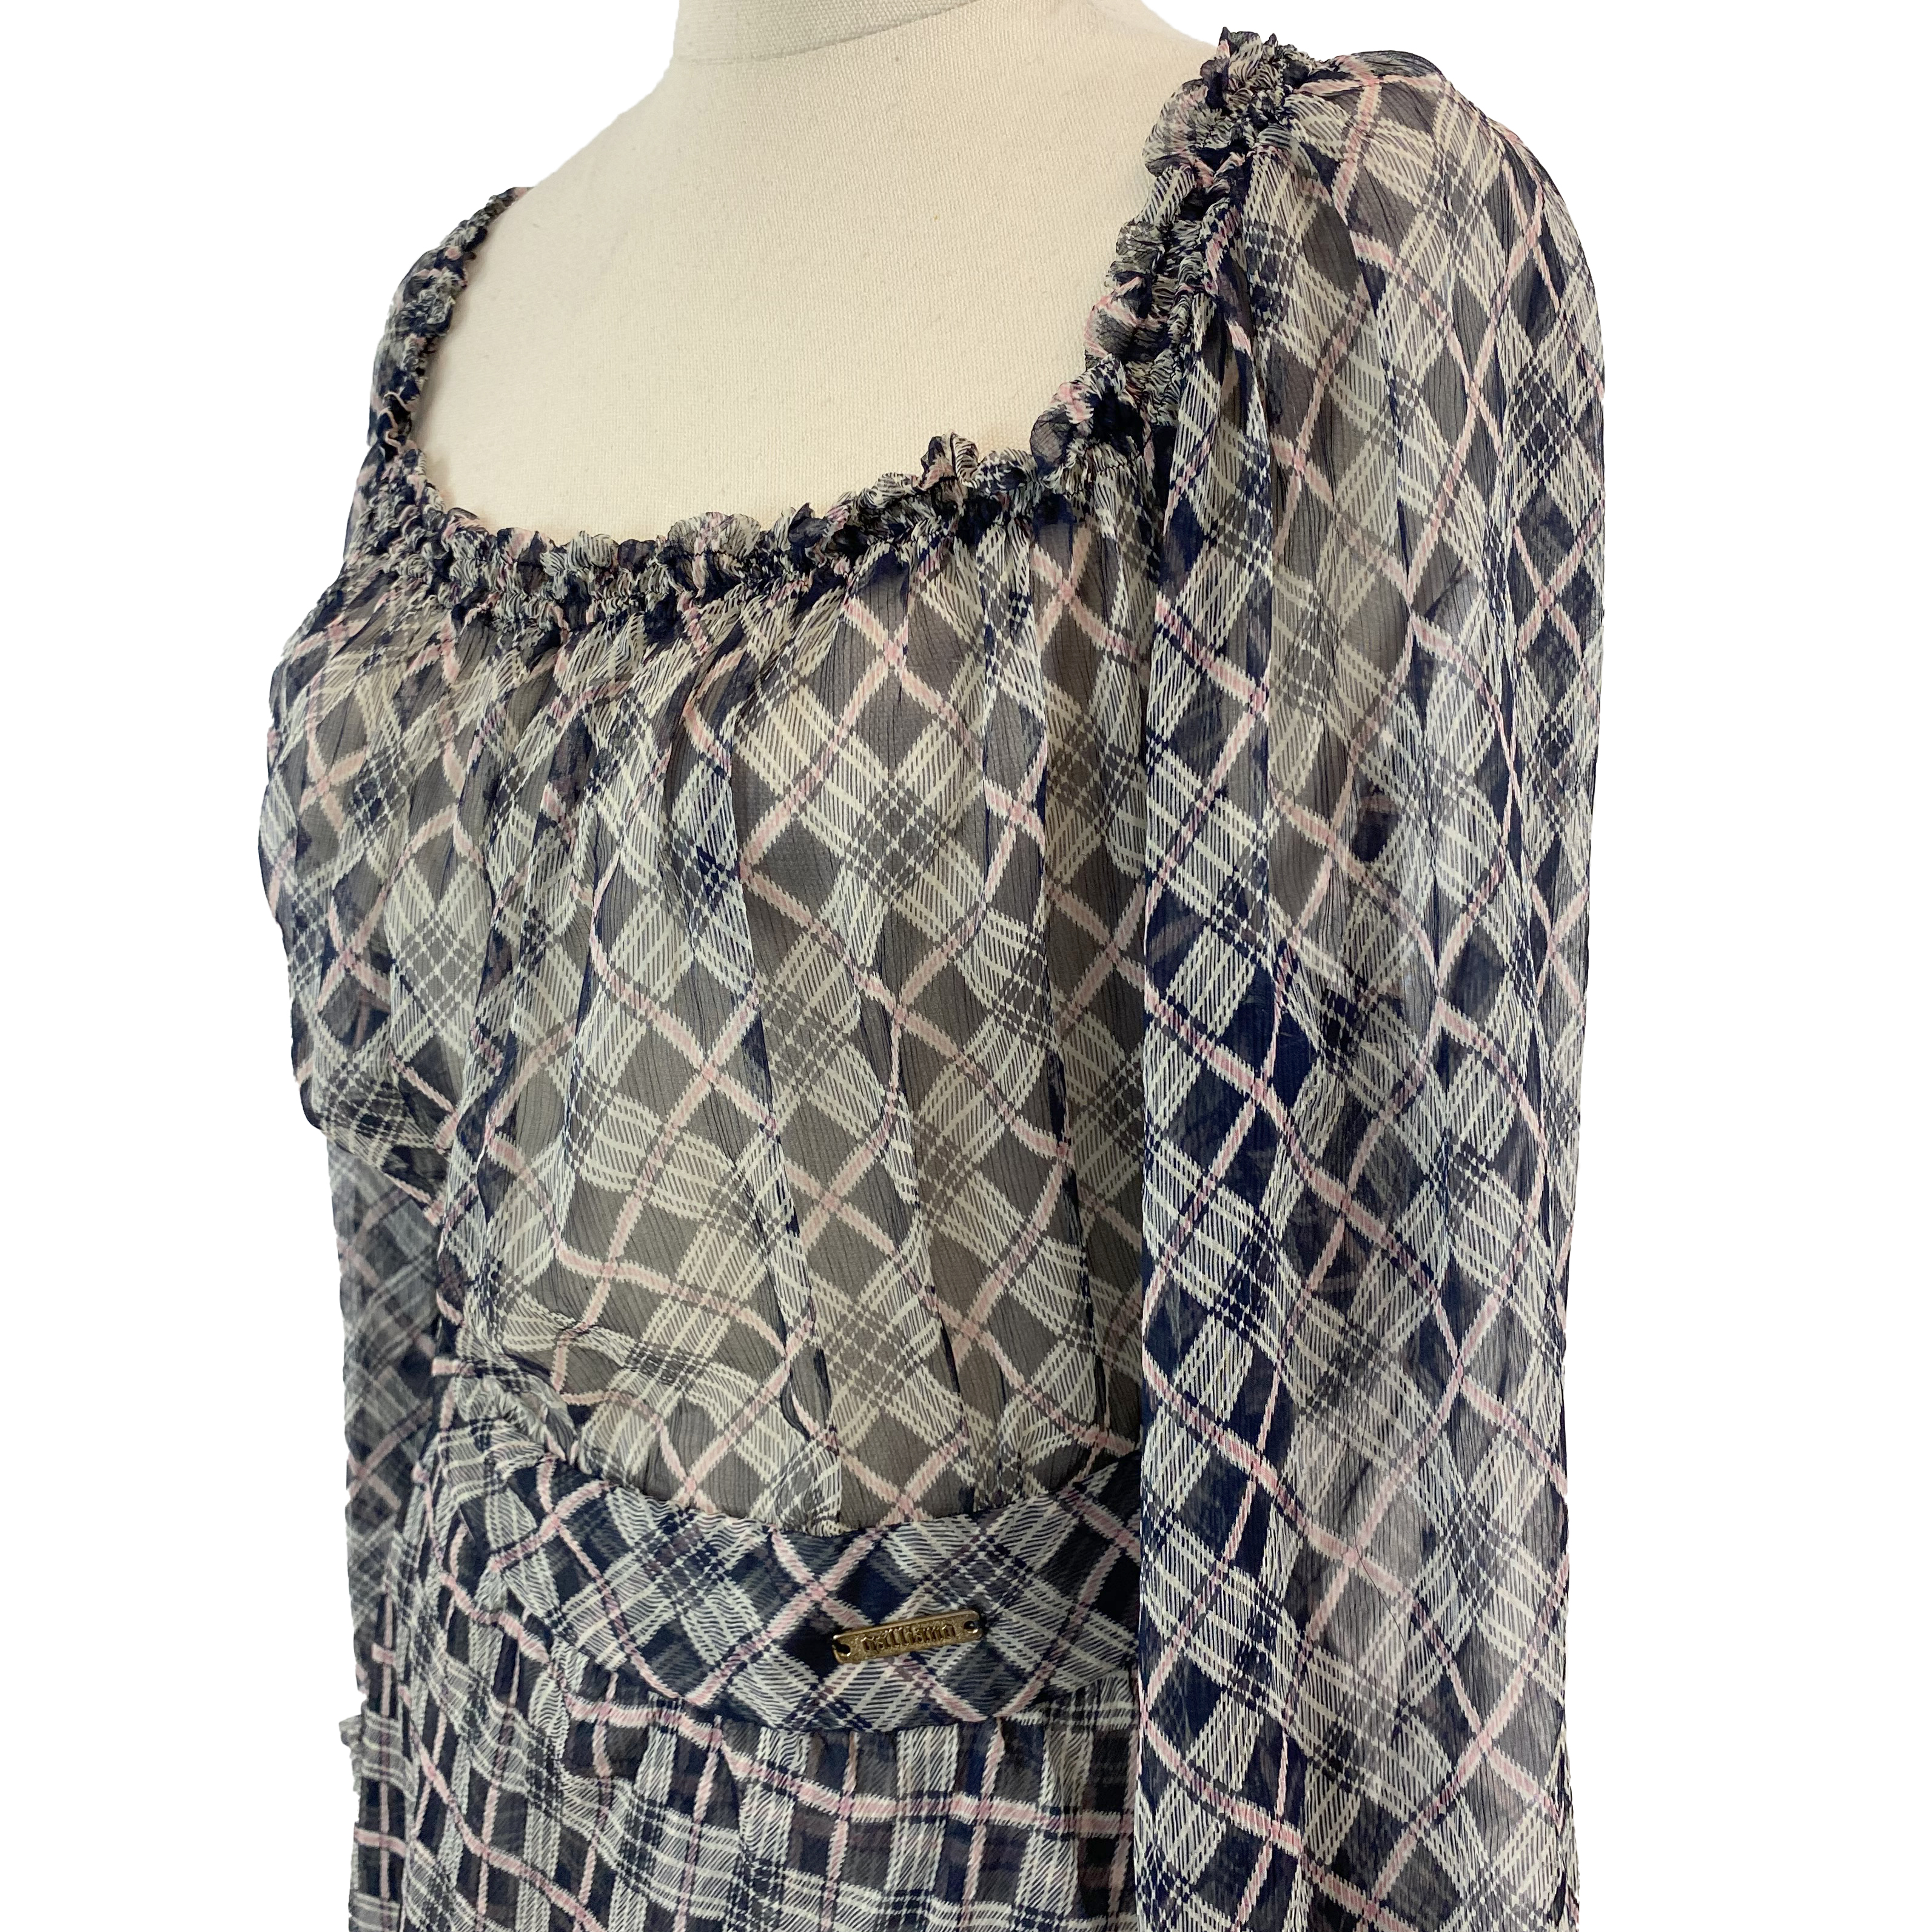 Galliano Checkered Black/White/Pink Sheer Silk Dress